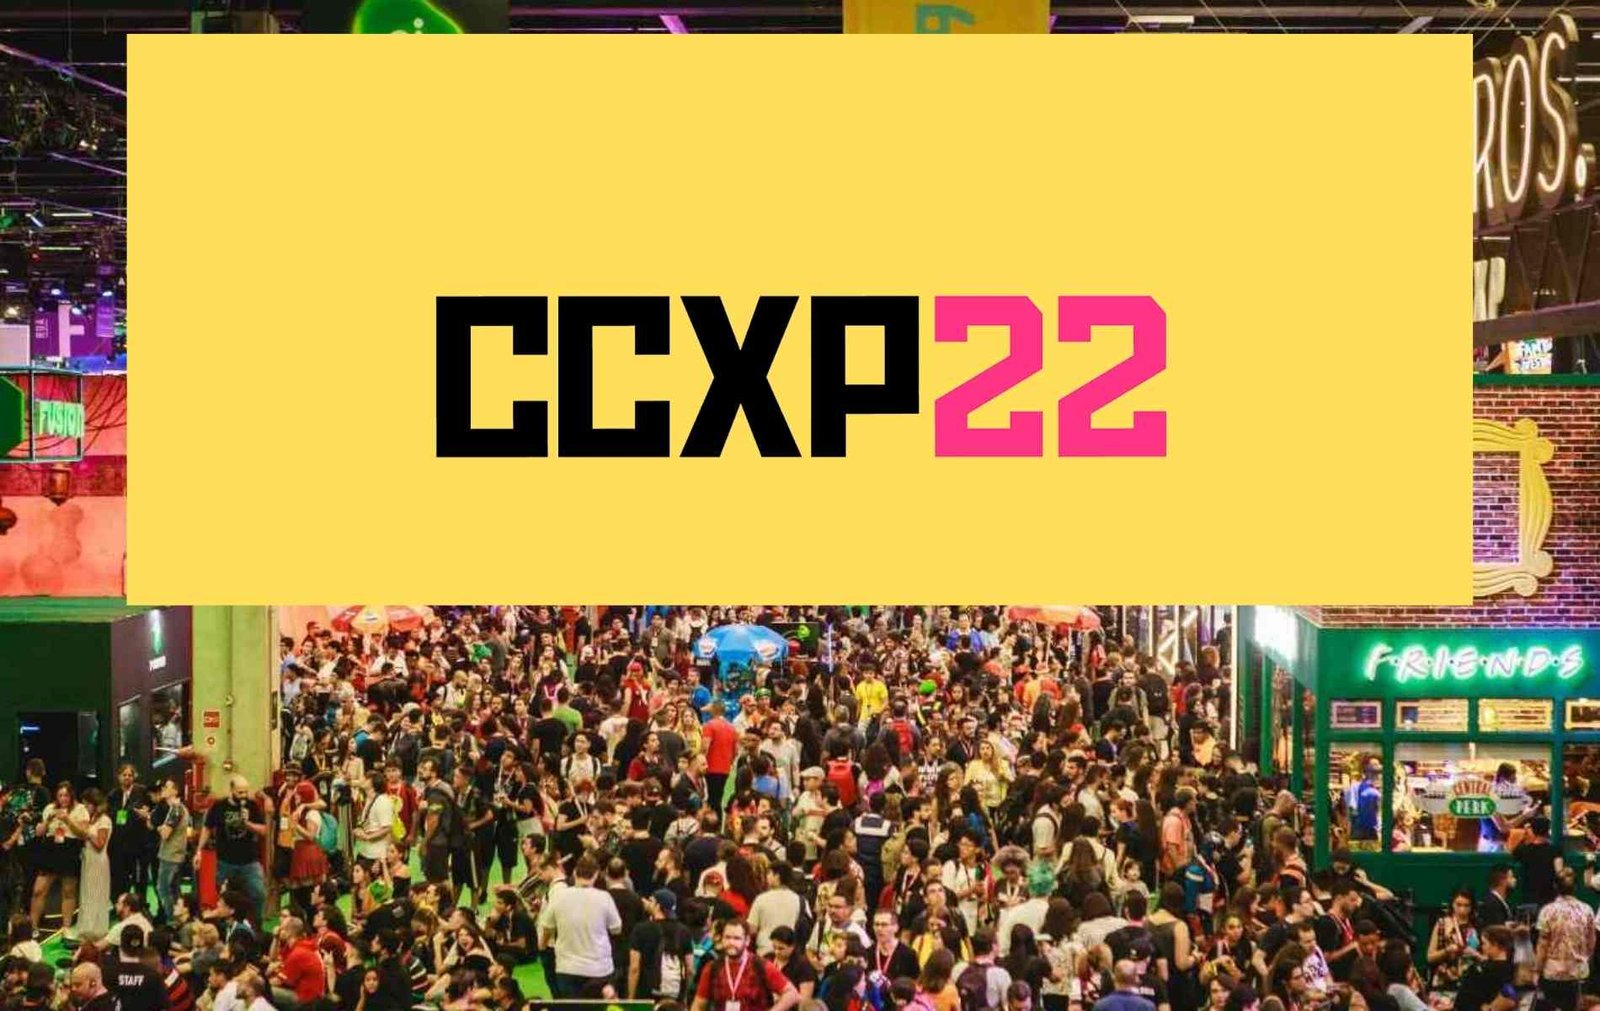 CCXP22